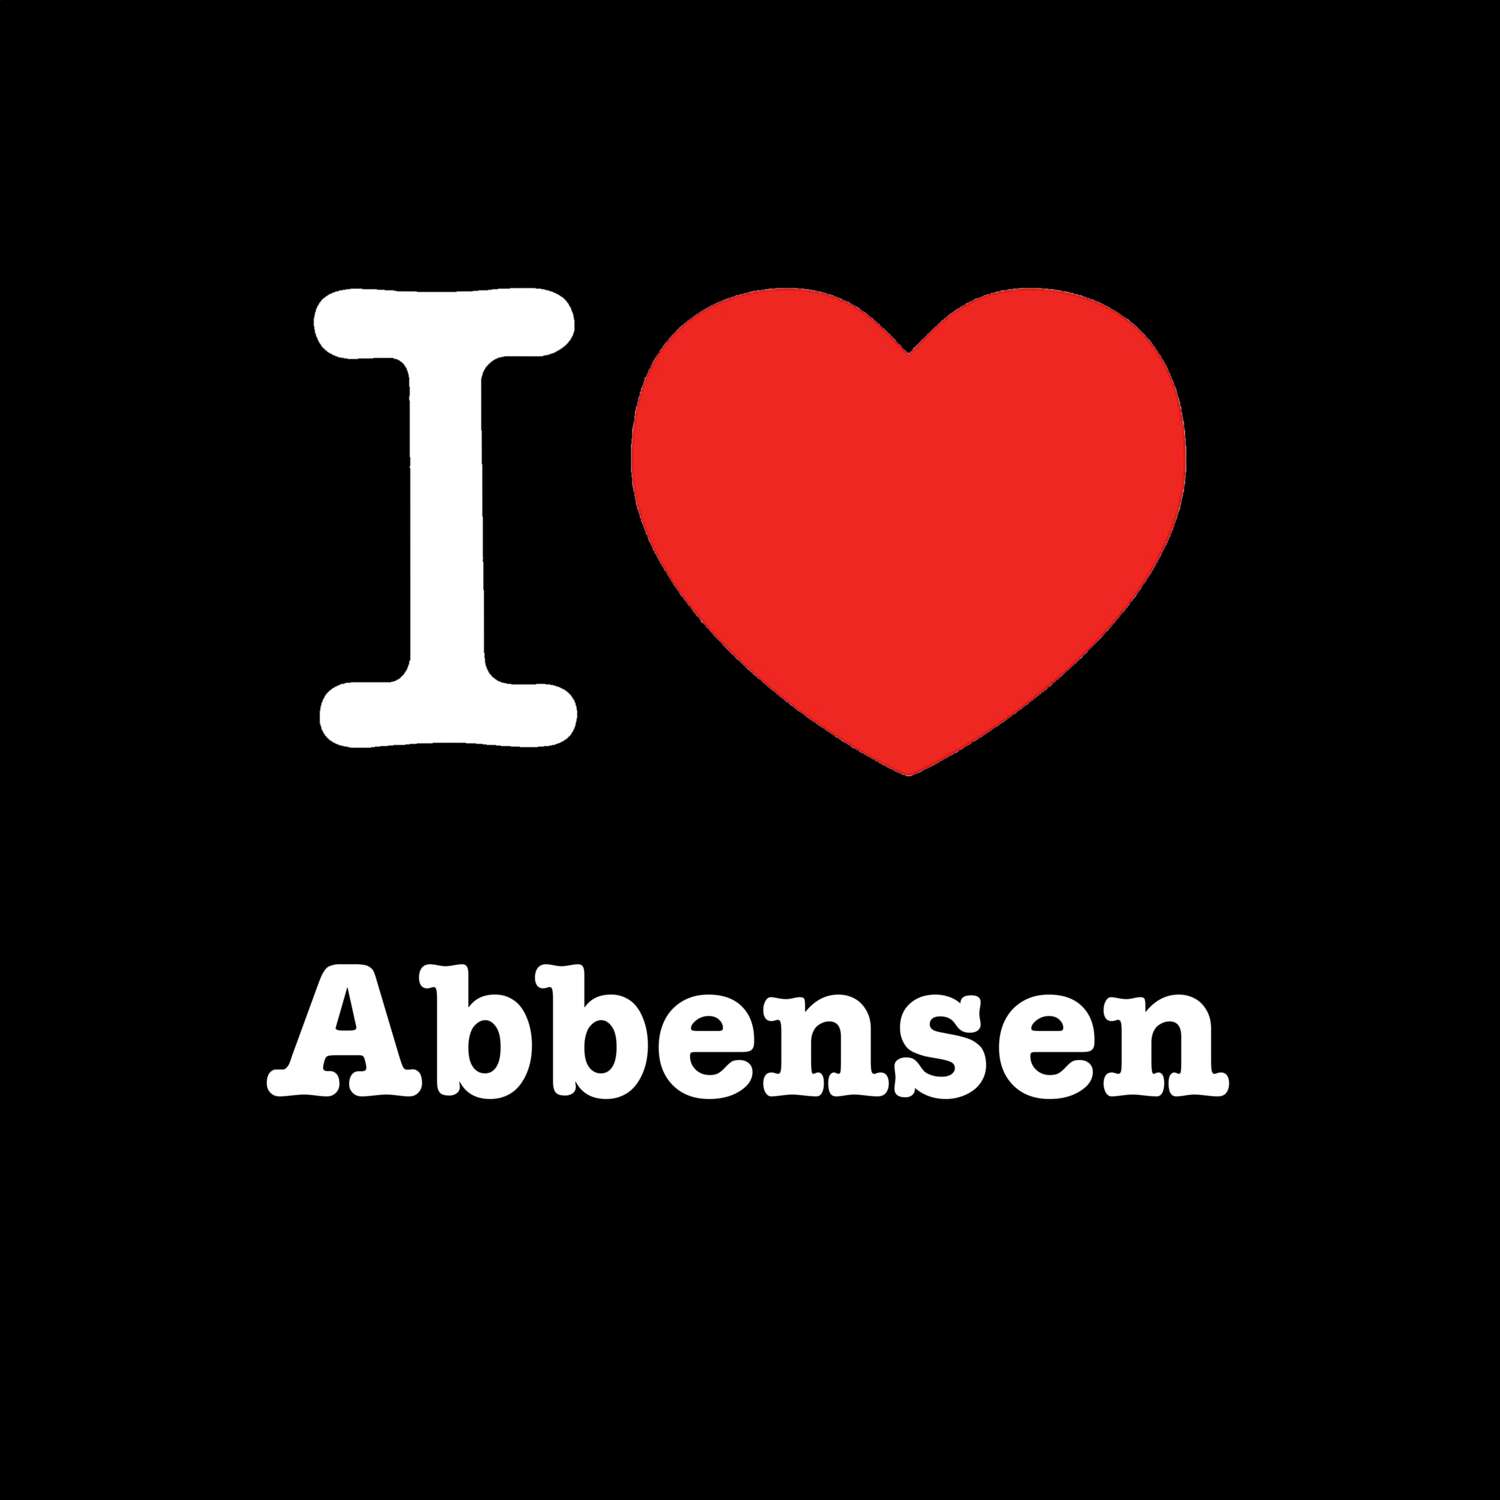 Abbensen T-Shirt »I love«